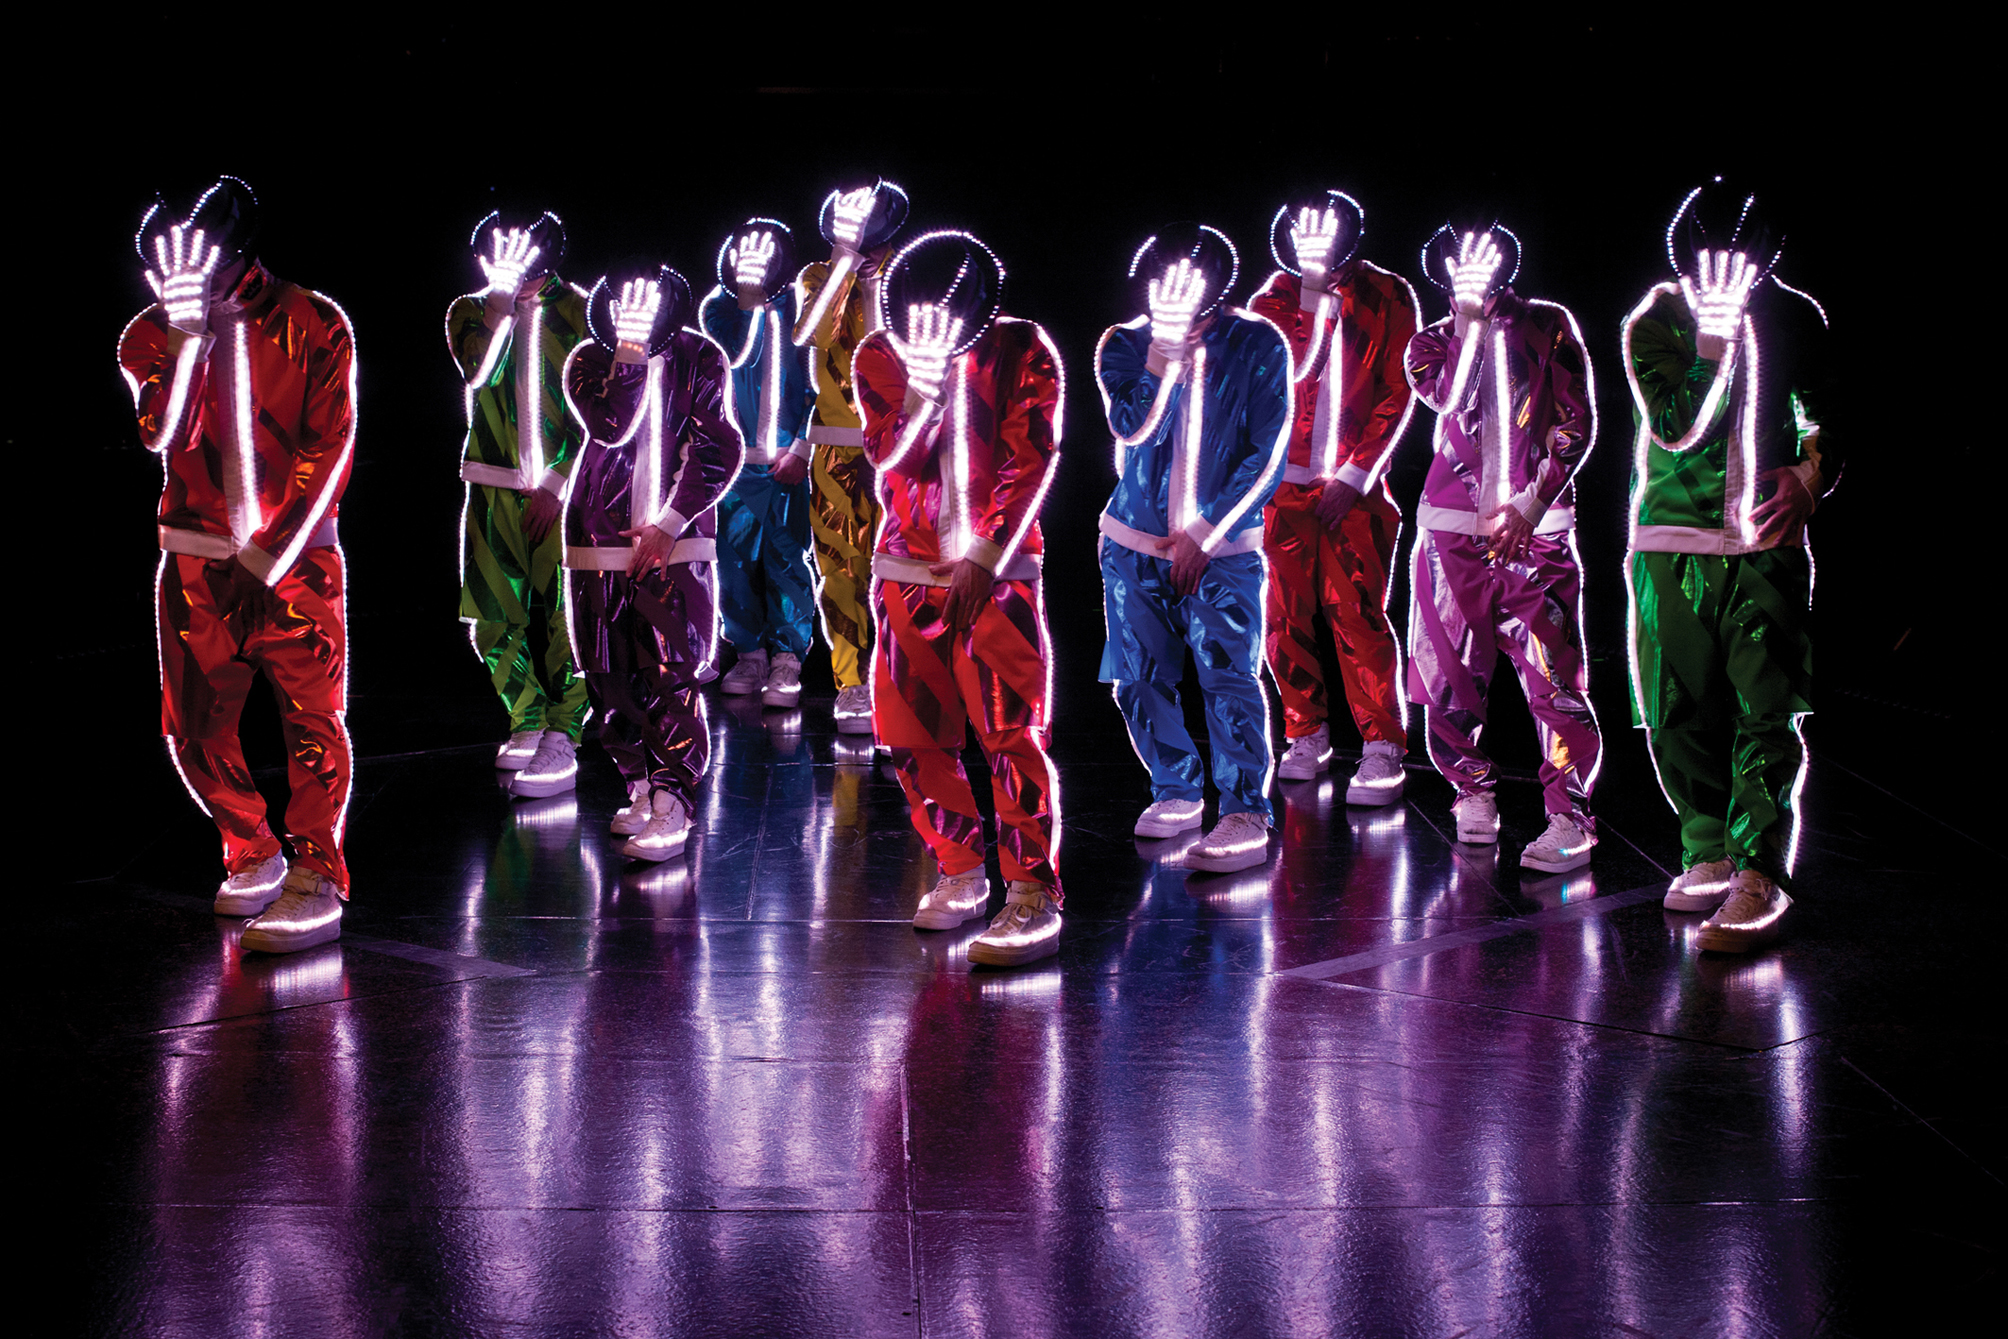 Popping dancer. Michael Jackson Cirque du Soleil. Стиль танца поппинг. Танцы в светящихся костюмах.